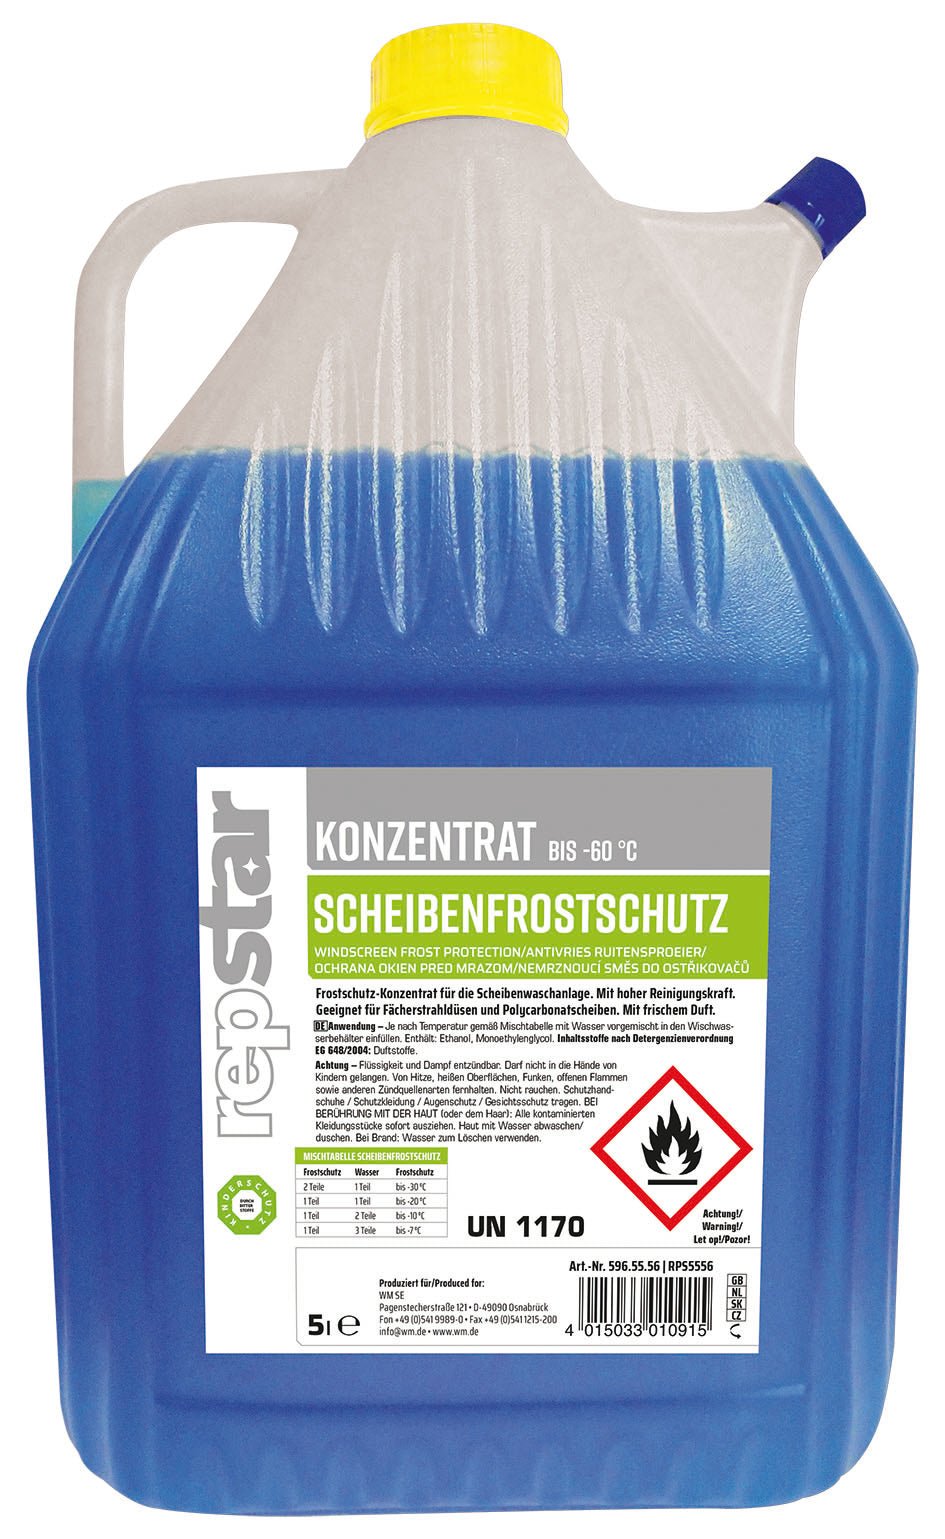 Repstar Scheibenfrostschutz Antifrost Konzentrat – Saar-Pfalz Handel